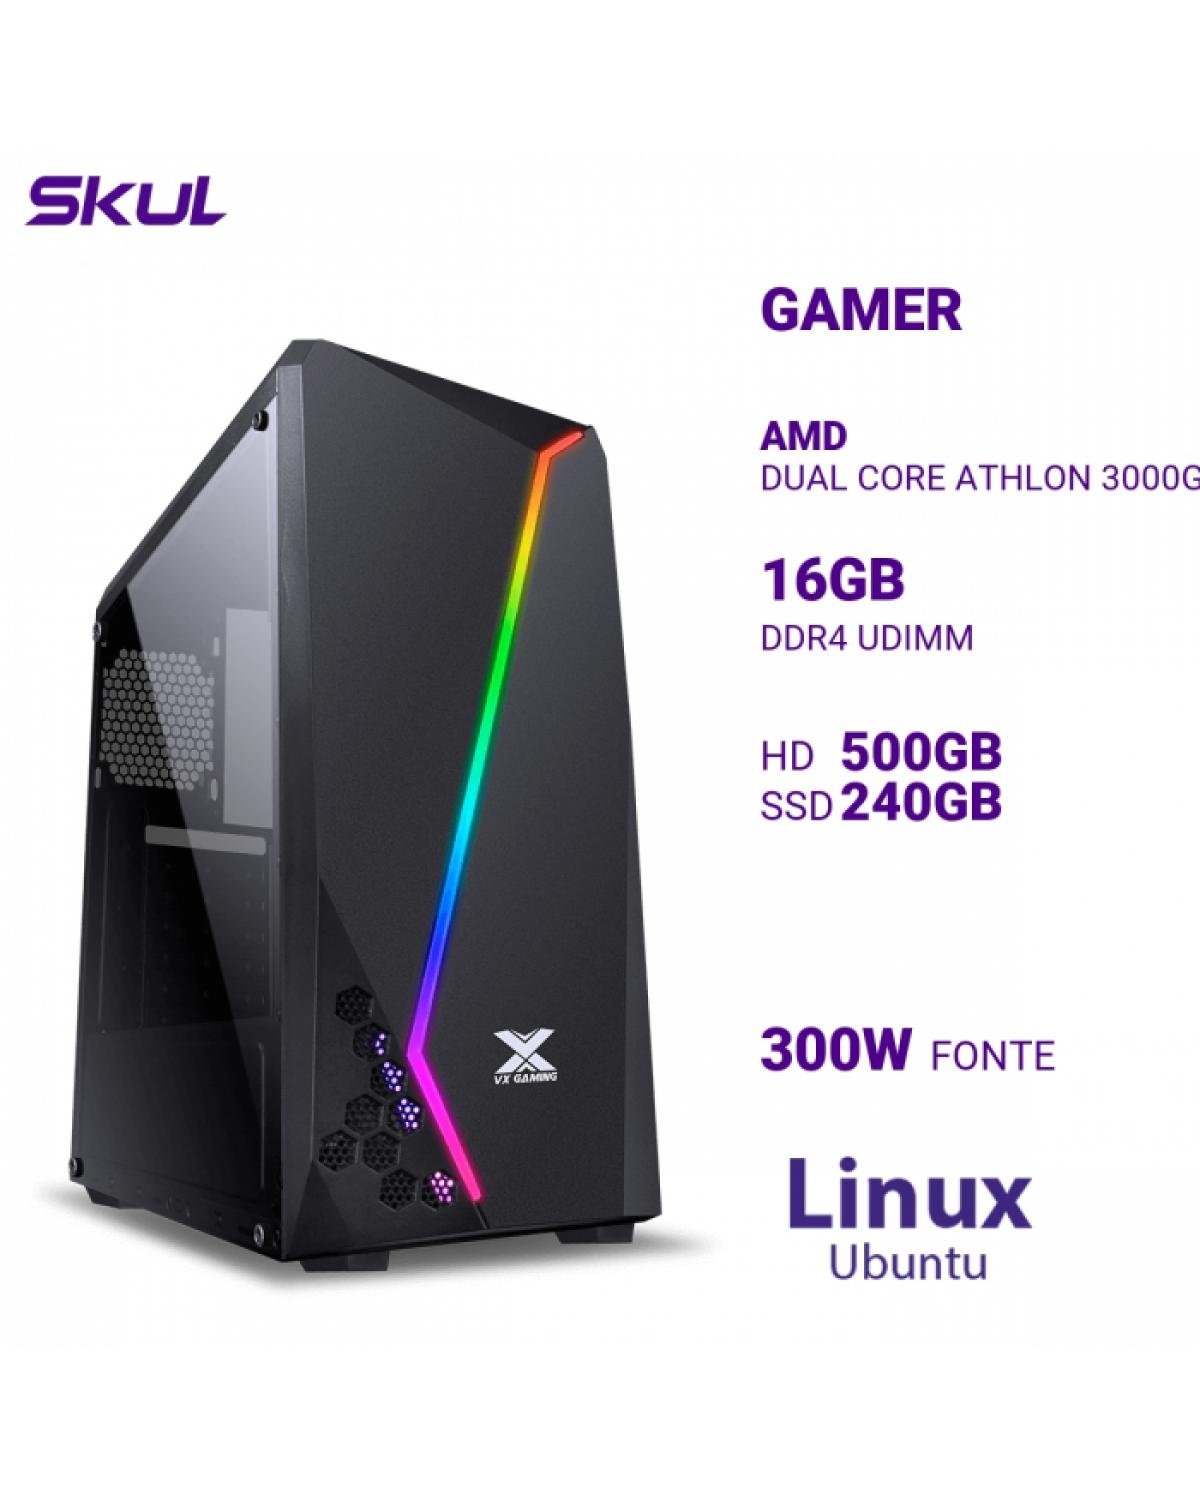 COMPUTADOR GAMER 1000 DUAL CORE ATHLON 3000G 3.50GHZ MEM 16GB DDR4 HD 500GB SSD 240GB FONTE 300W LINUX